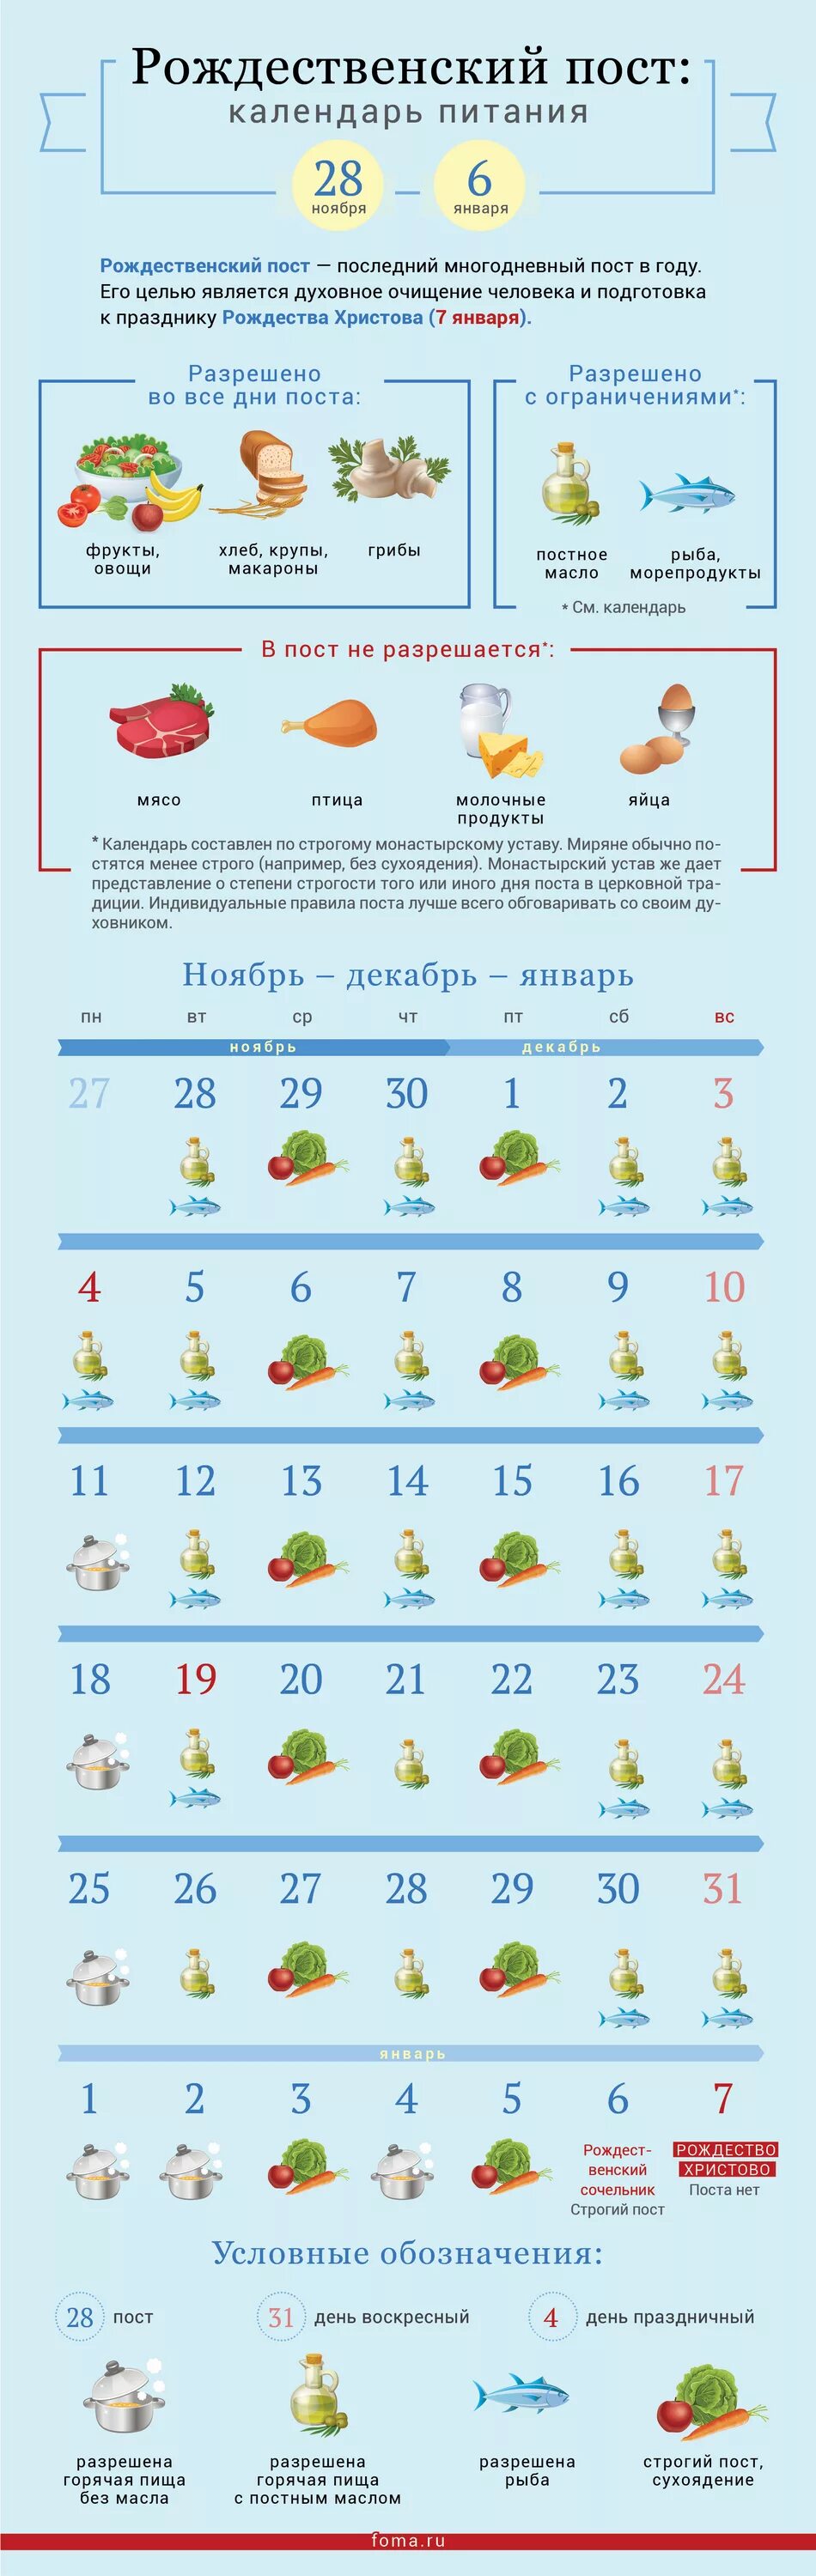 Рождественский пост 2022 календарь питания по дням. Календарь питания Рождественского поста на 2022 год. Рождественский пост 2021-2022 календарь питания. Рождественский пост 2022-2023 питание по дням. Православный календарь питания по дням